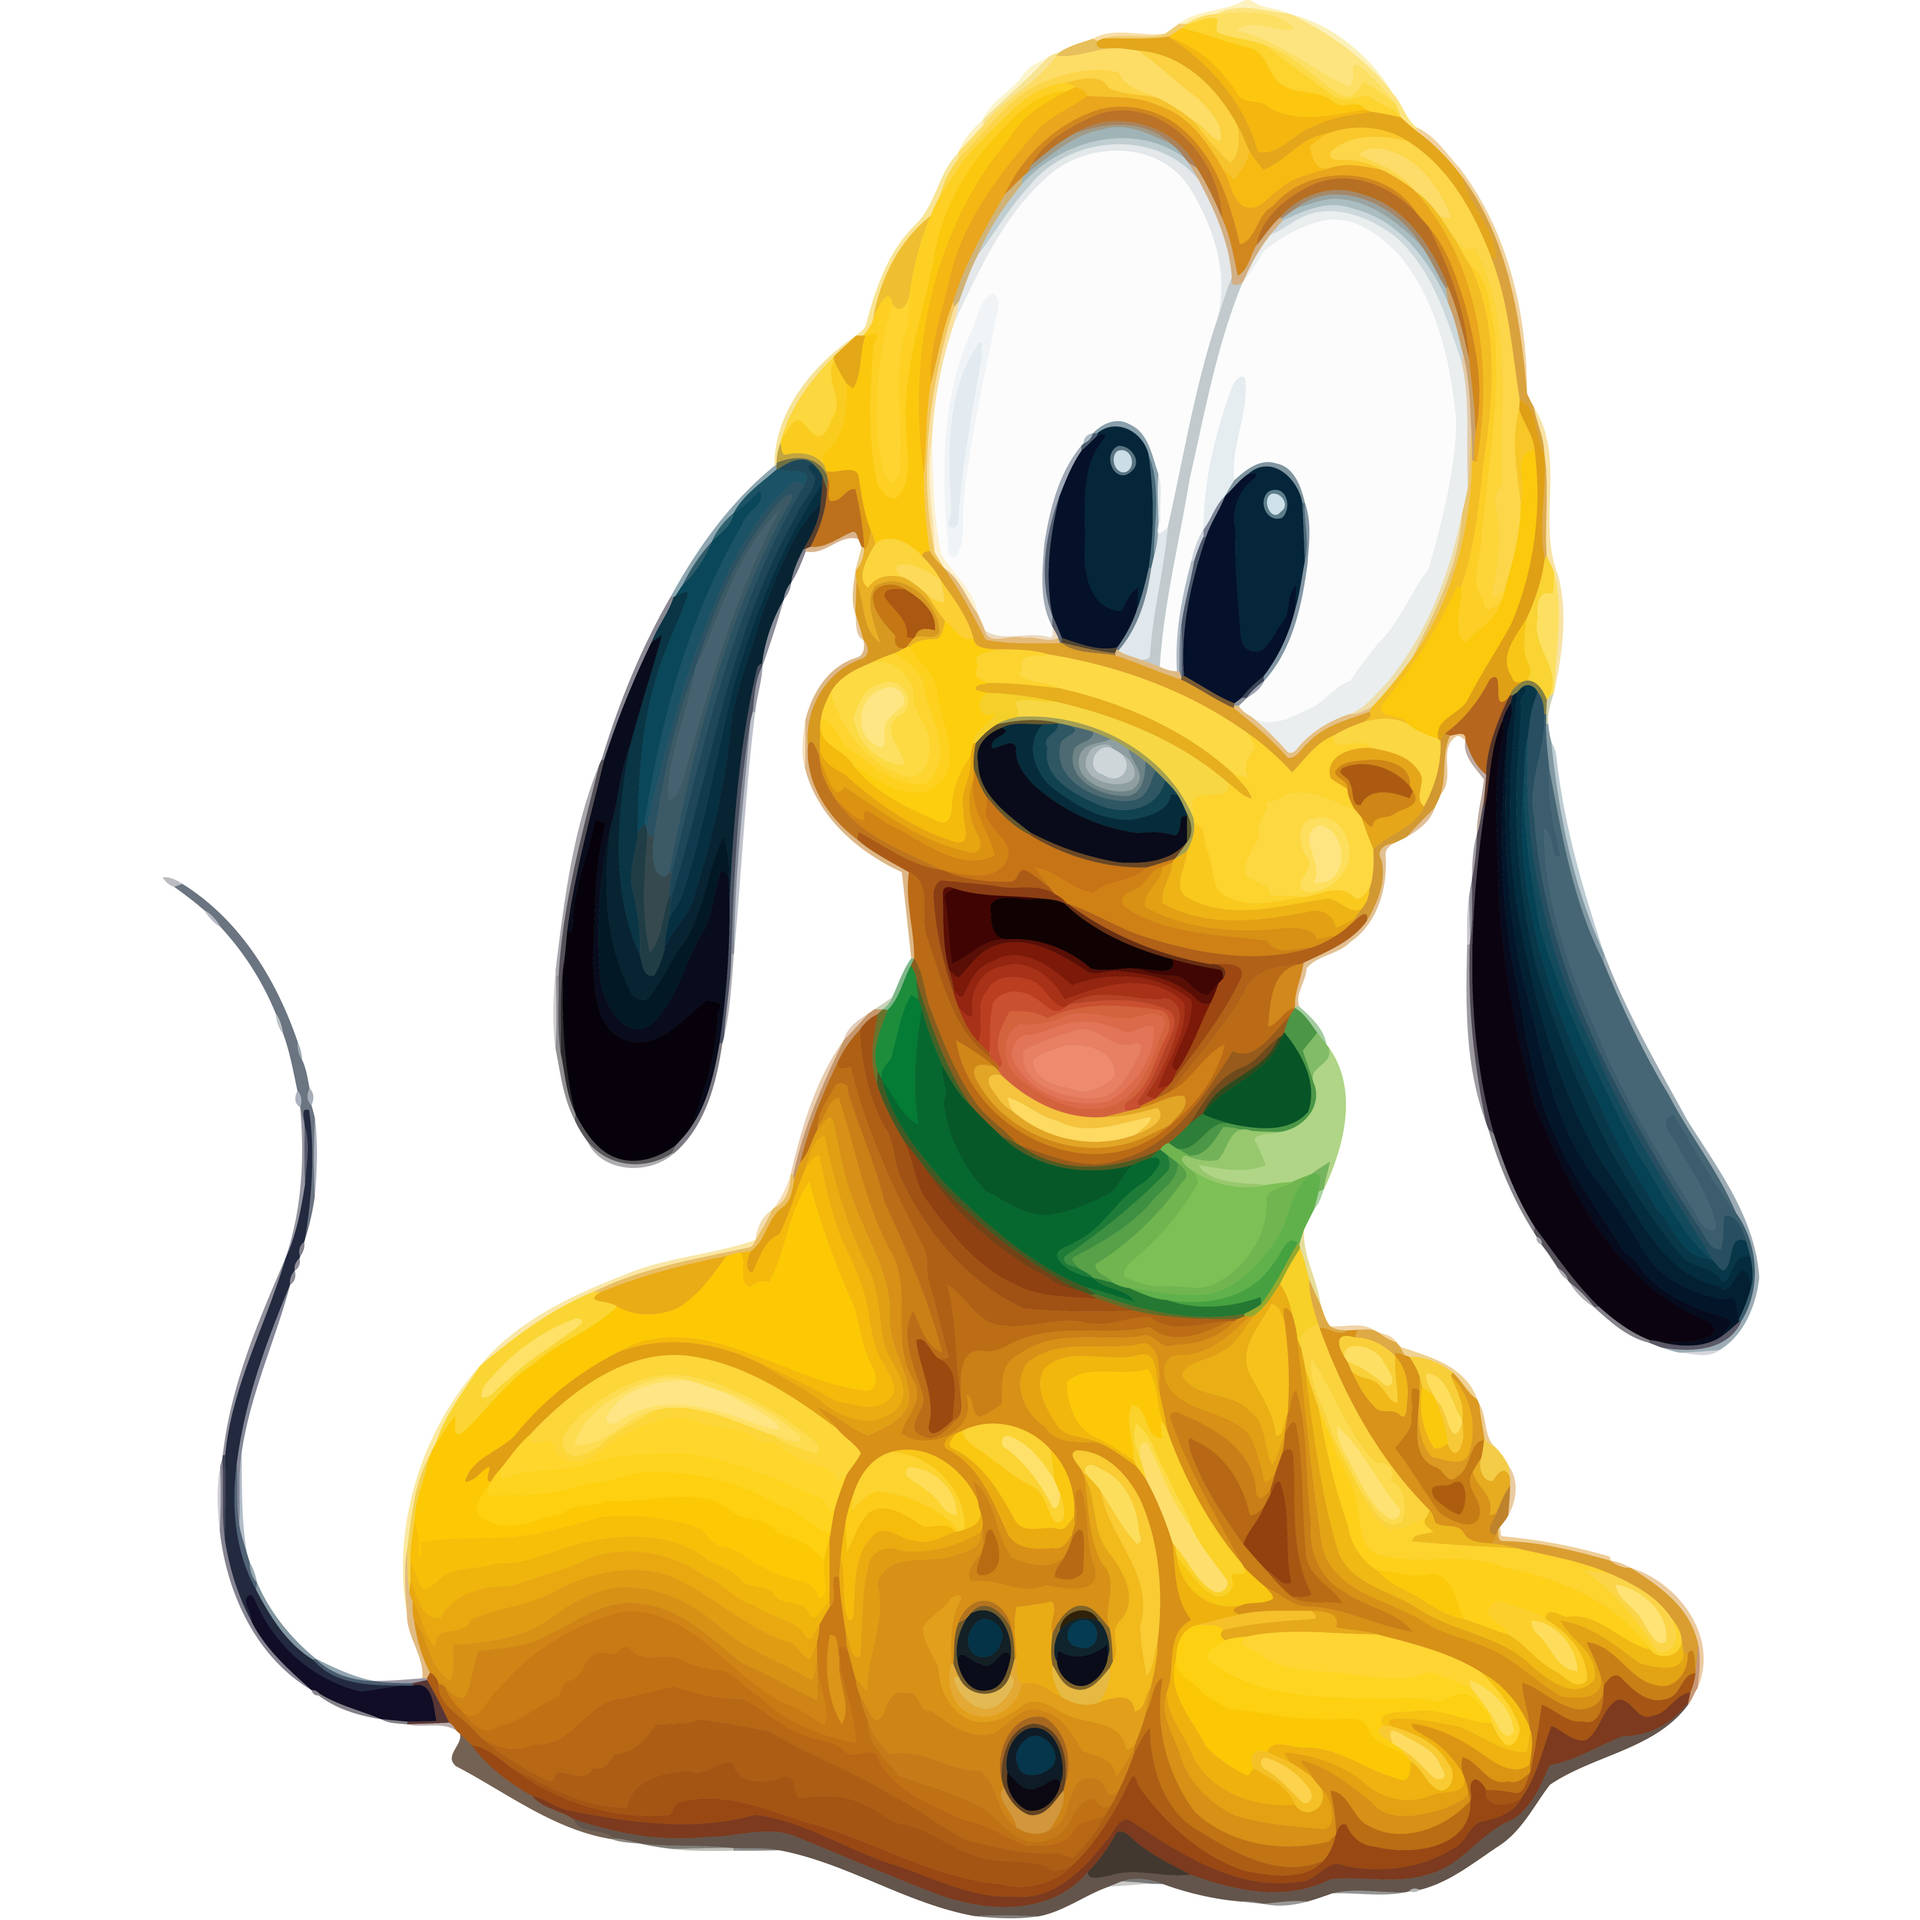 Disneybebé Pluto Fondo de pantalla